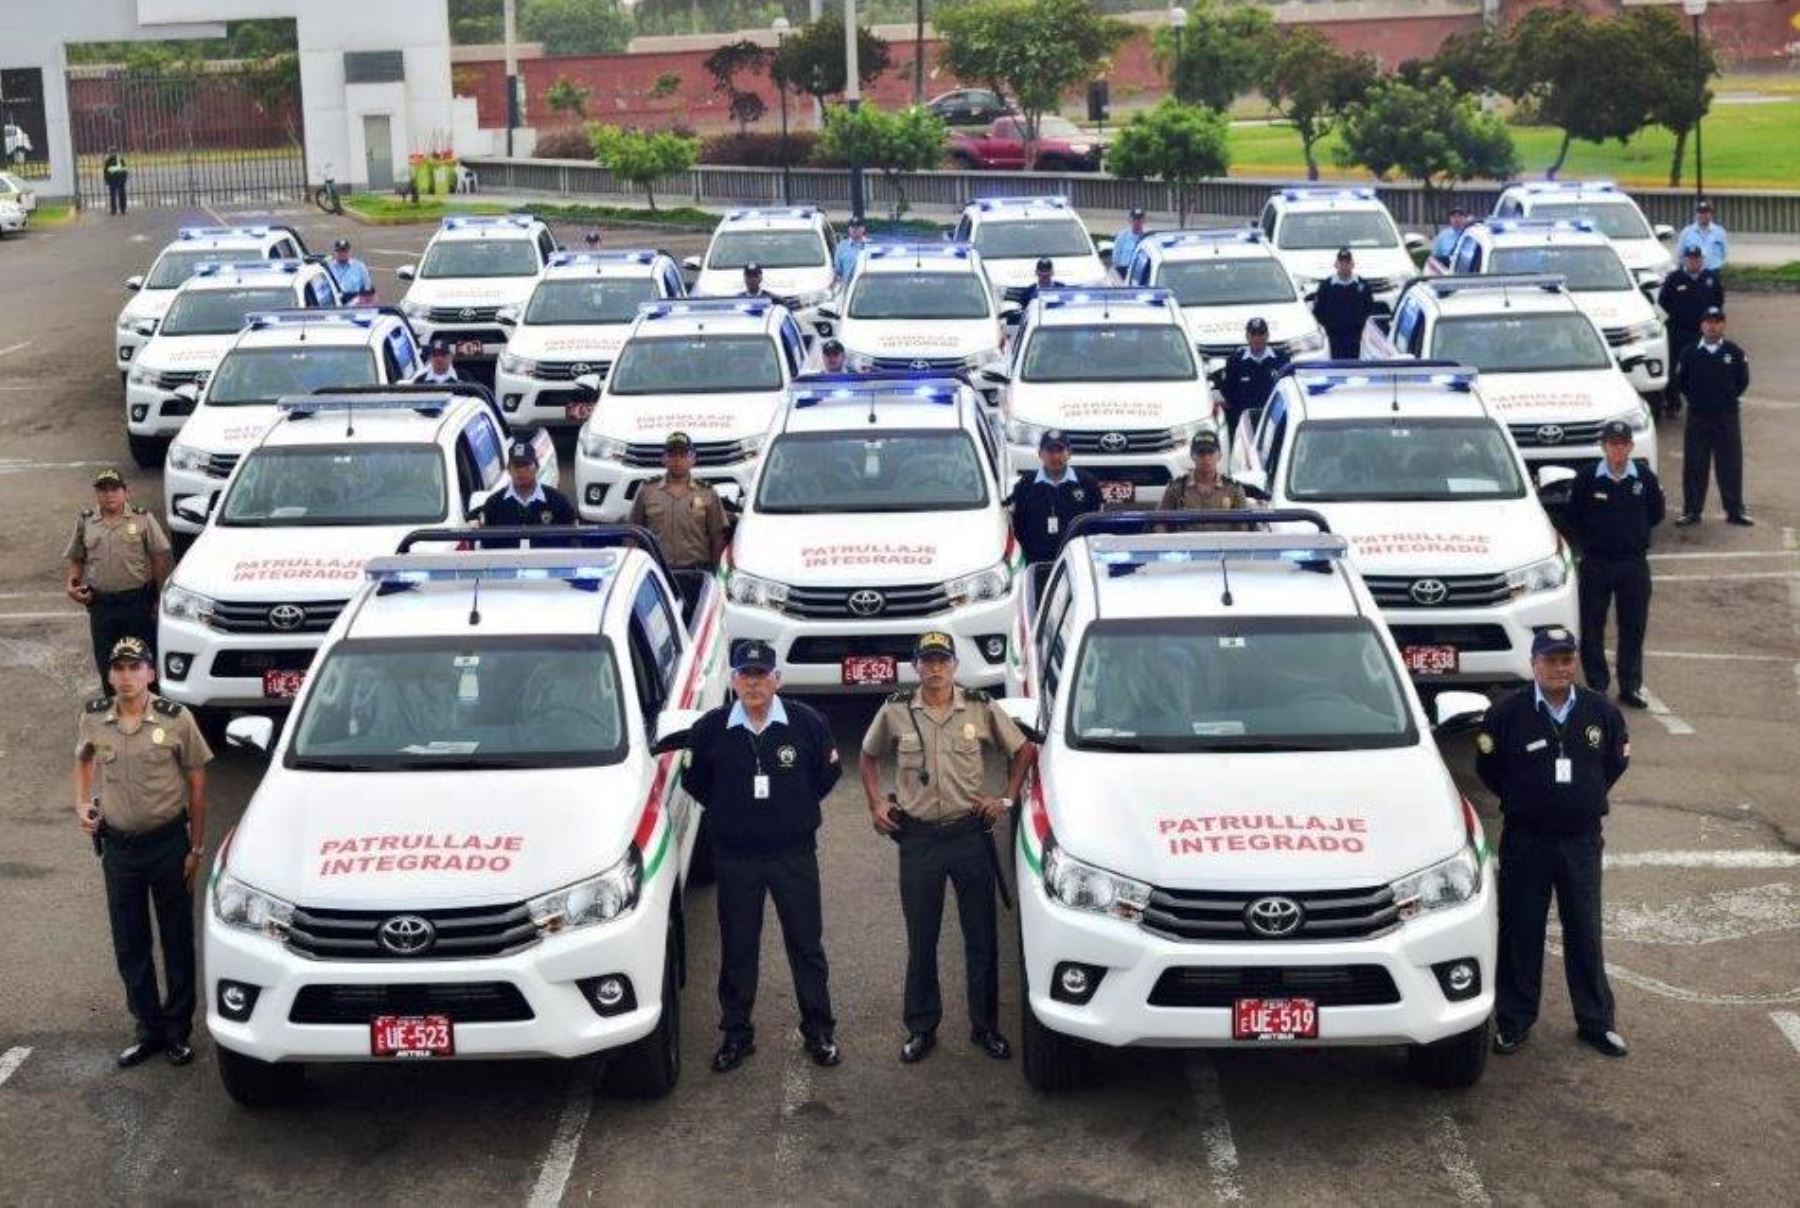 San Isidro refuerza patrullaje integrado con la compra de 34 nuevas camionetas. Foto: ANDINA/Difusión.